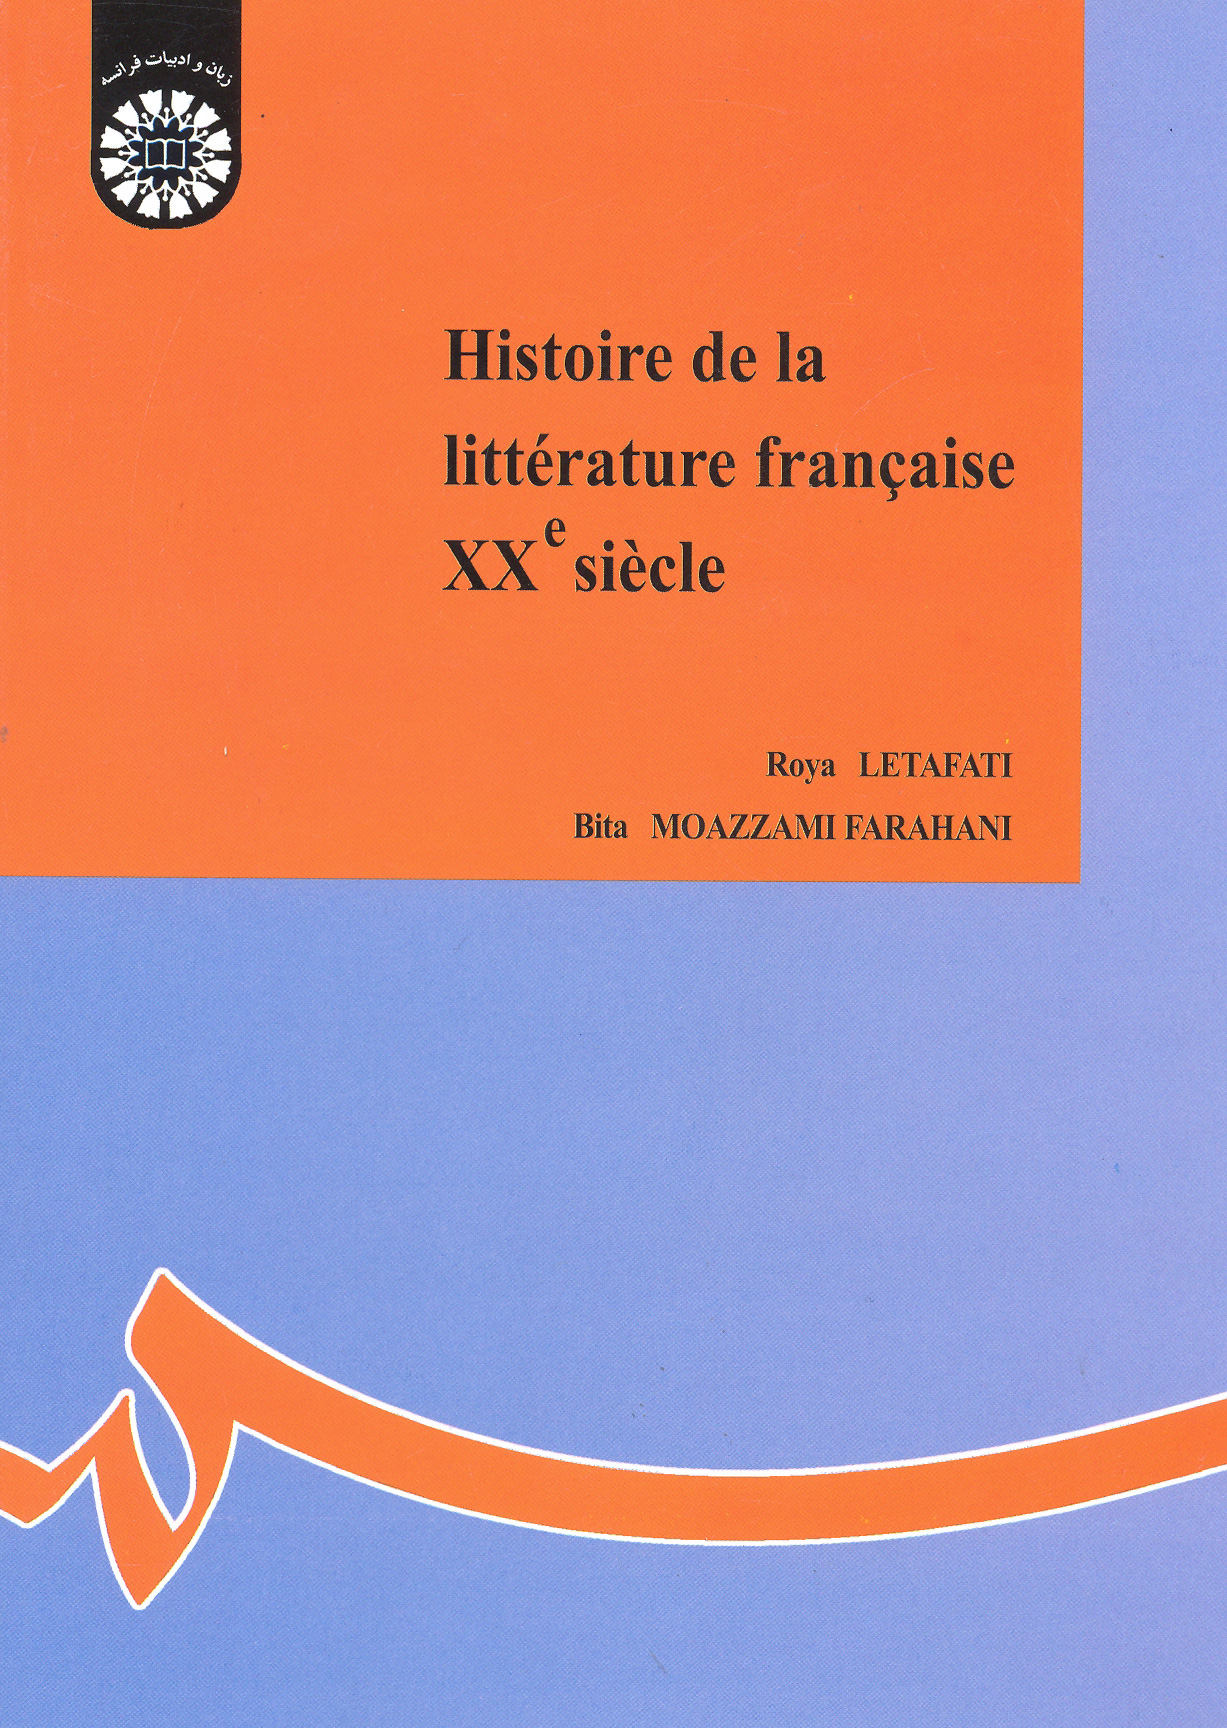 ‏‫‭La litterature francaise XXe siecle